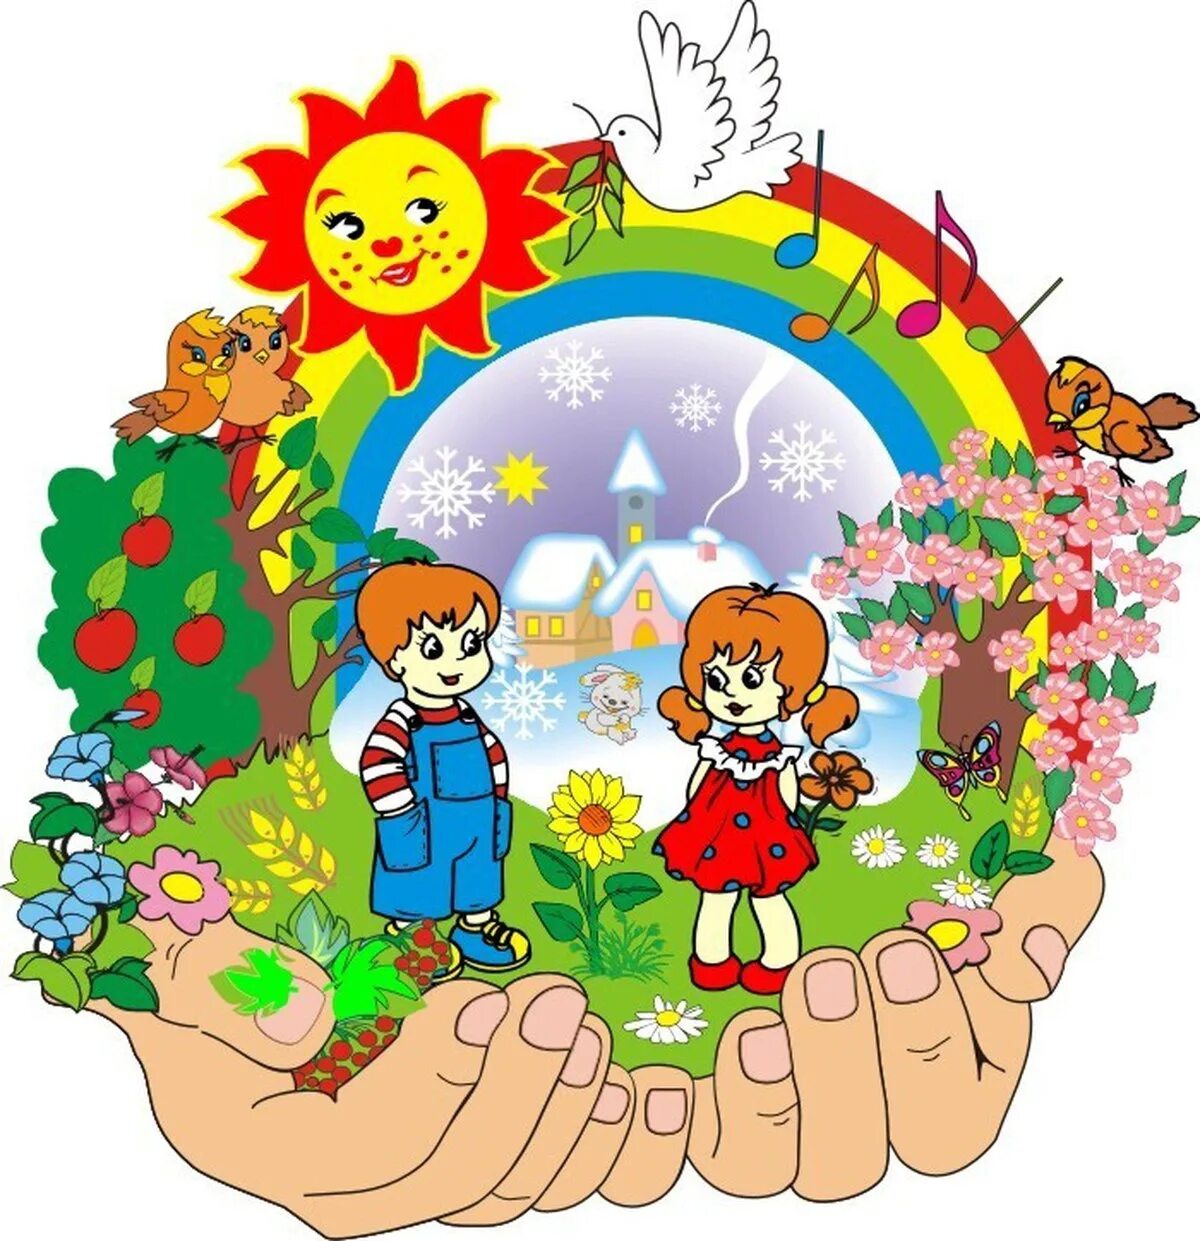 School detsad health. Детский сад картинки. Экология в детском саду. Эмблема детского сада. Детям об экологии.